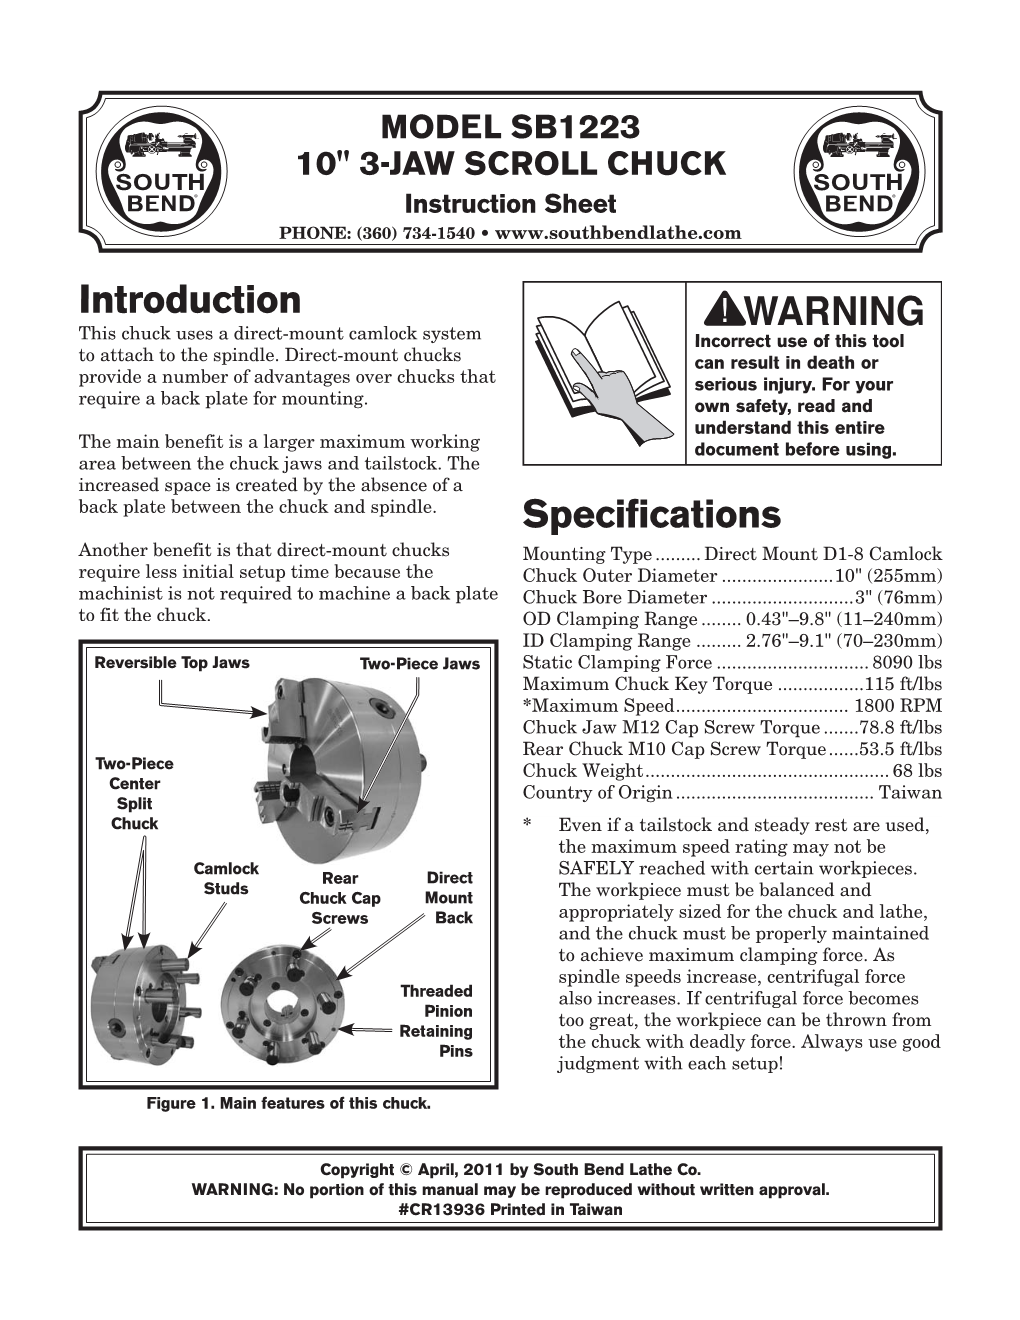 Model Sb1223 10" 3-Jaw Scroll Chuck